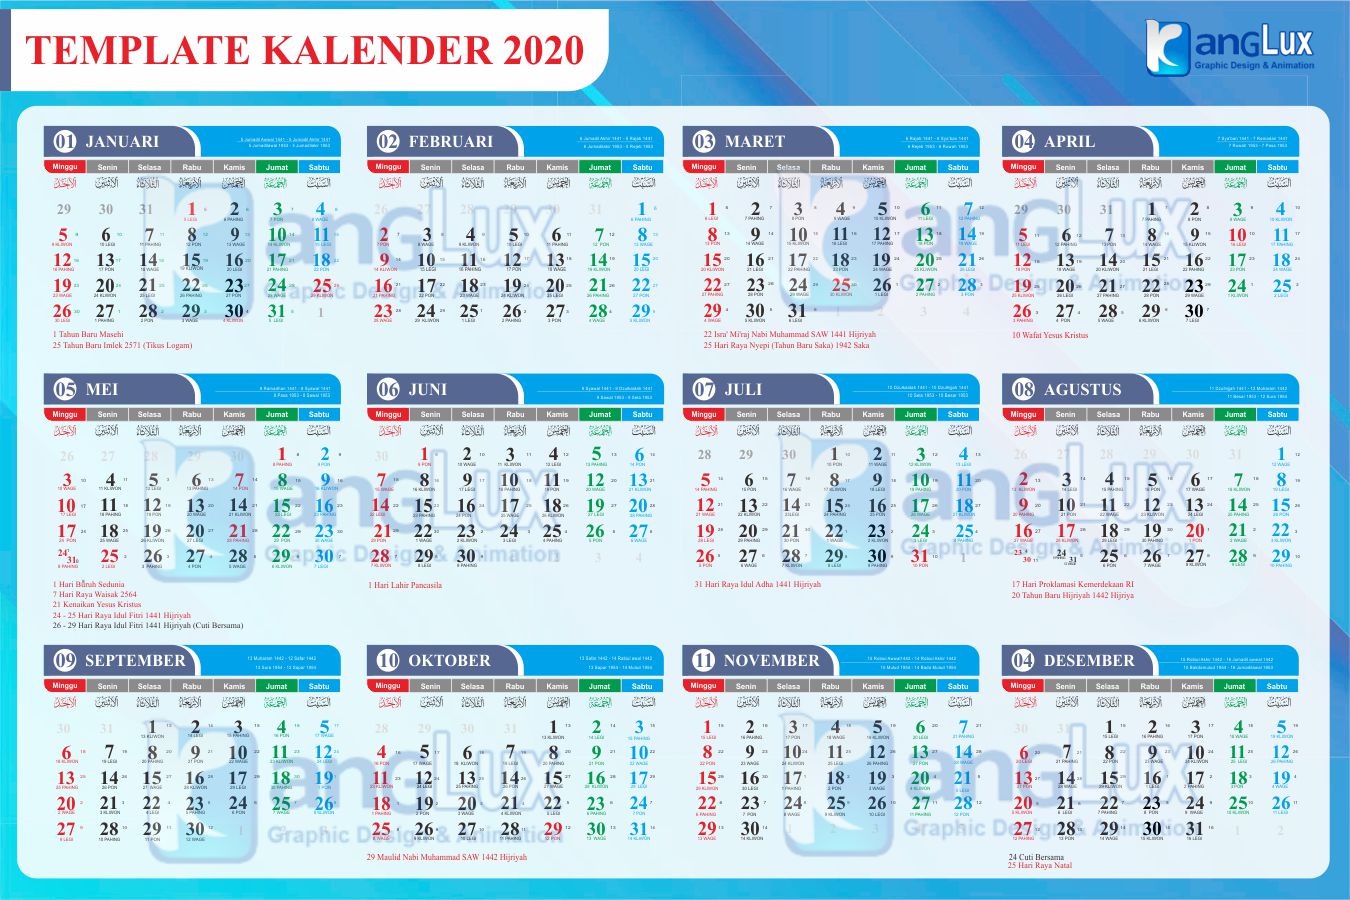  Gratis  Download  Kalender  2020  cdr corel draw kanglux